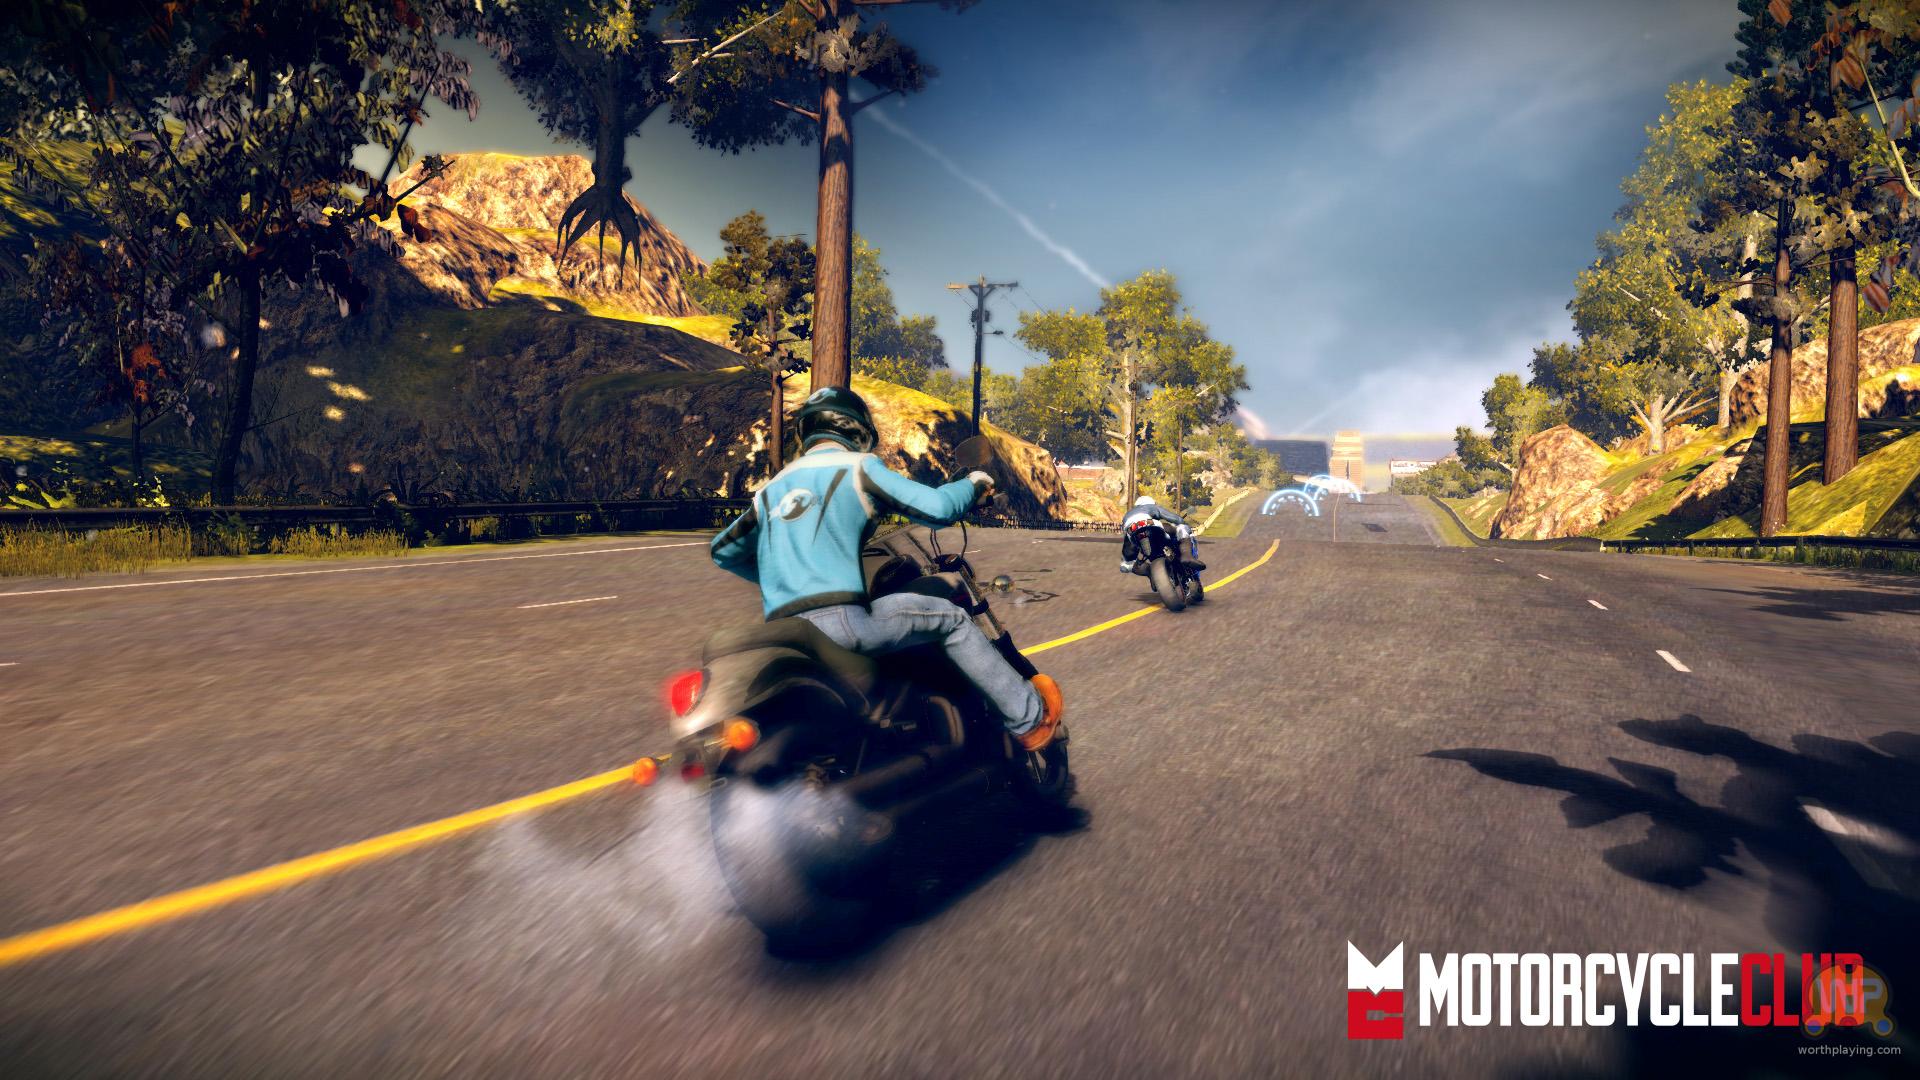 Игра 5 мотоциклов. Игра Motorcycle Club ps3. Motorcycle Club Xbox 360. Гонки на мотоциклах игры. Мотоциклы из игр.